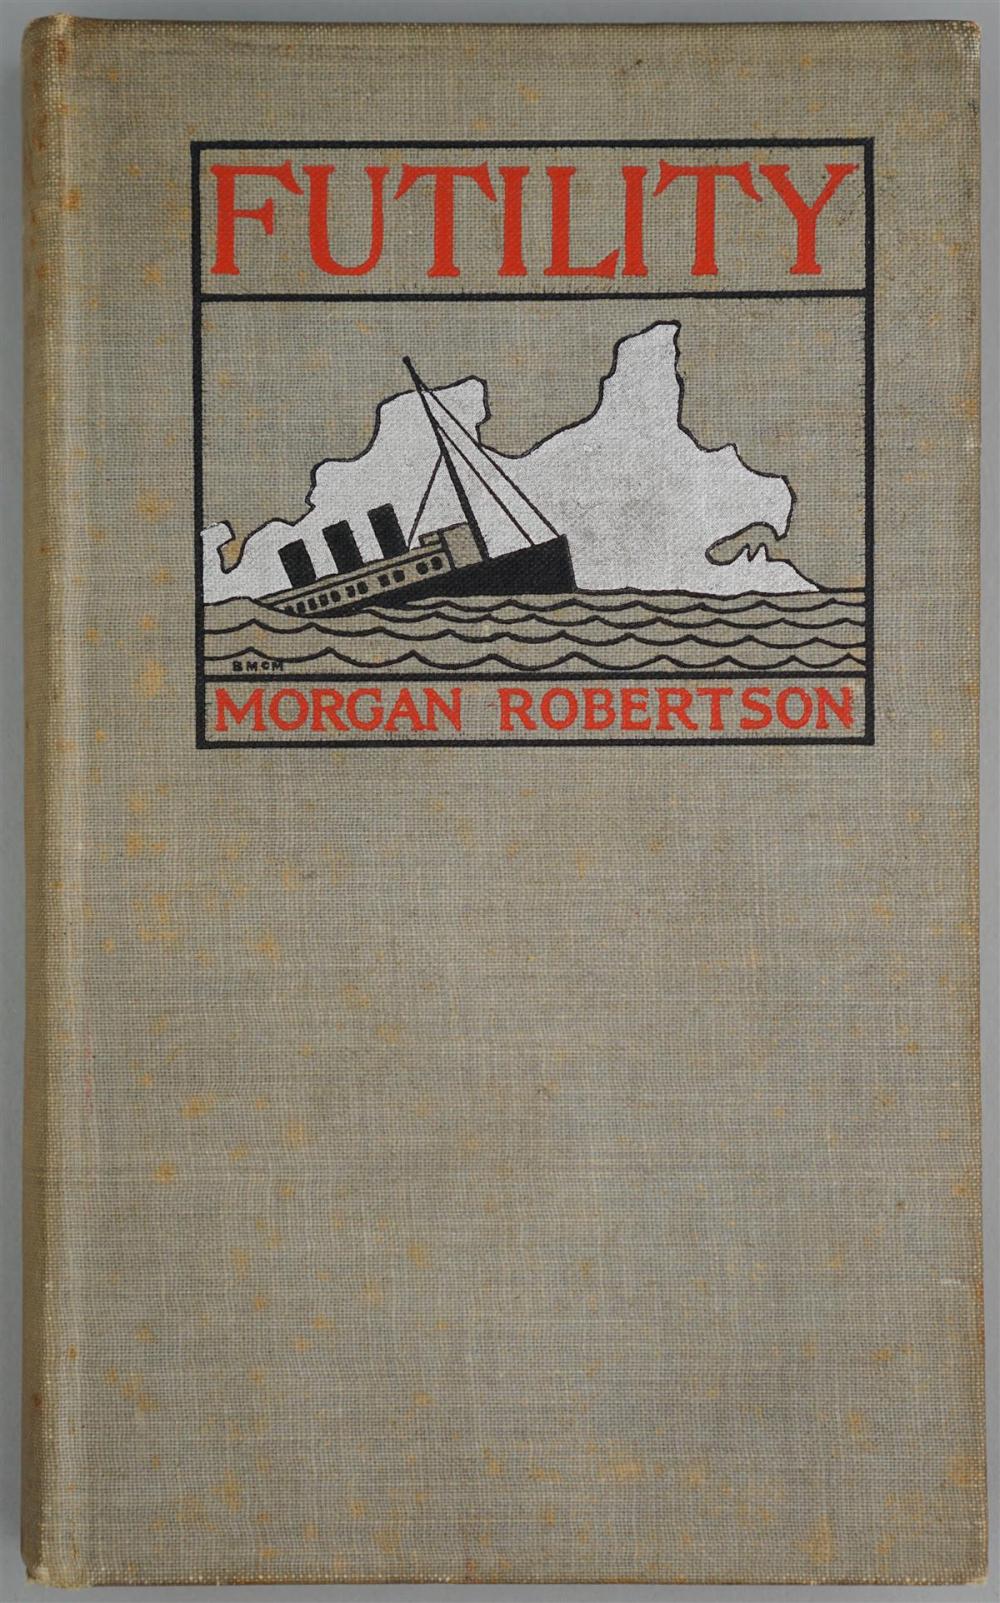 'FUTILITY' BY MORGAN ROBERTSON,